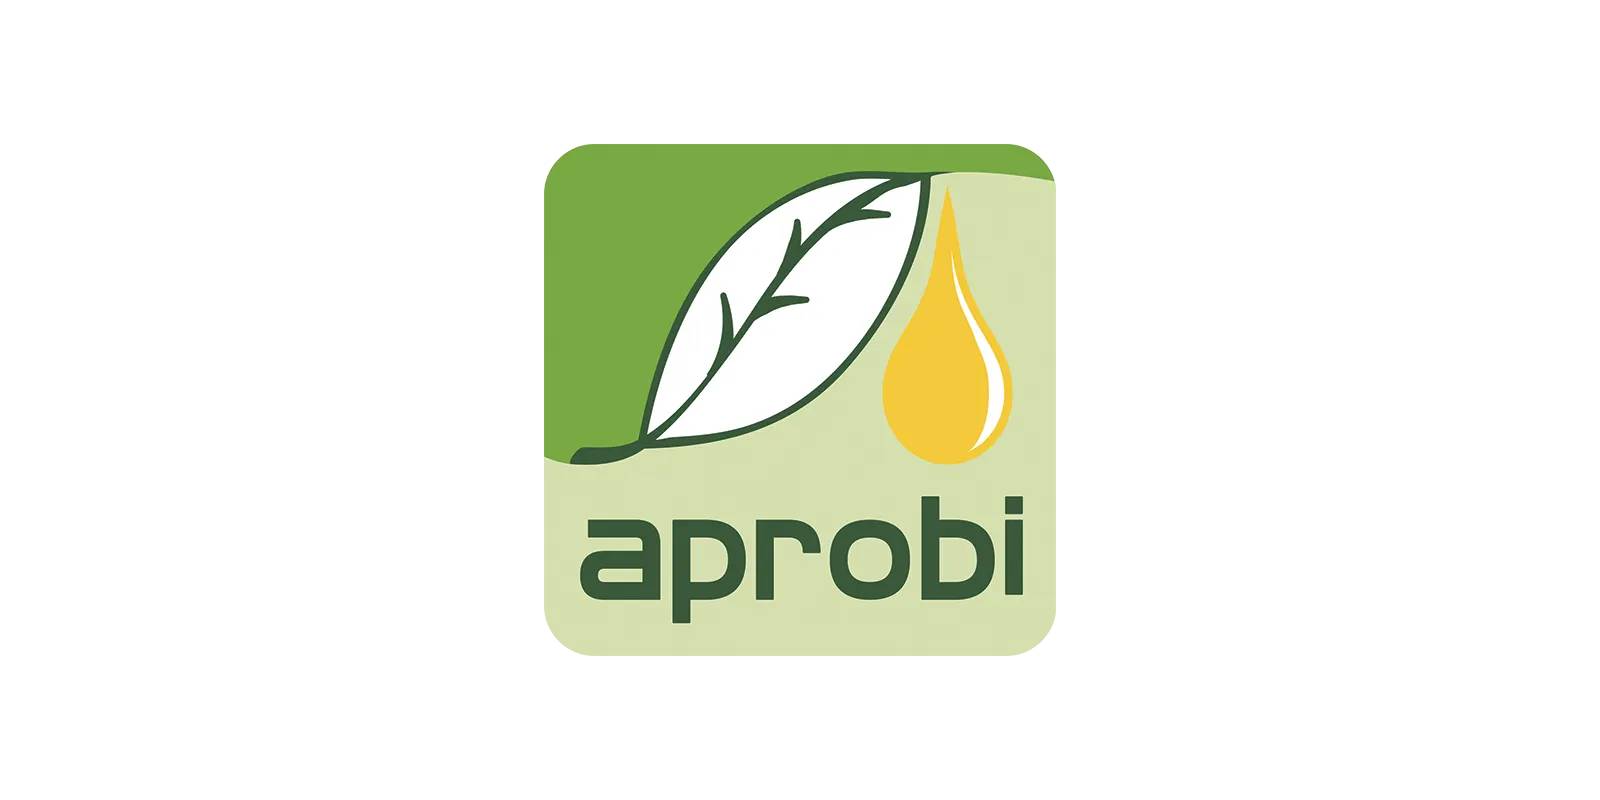 APROBI - Indonesia Biofuel Producer Association